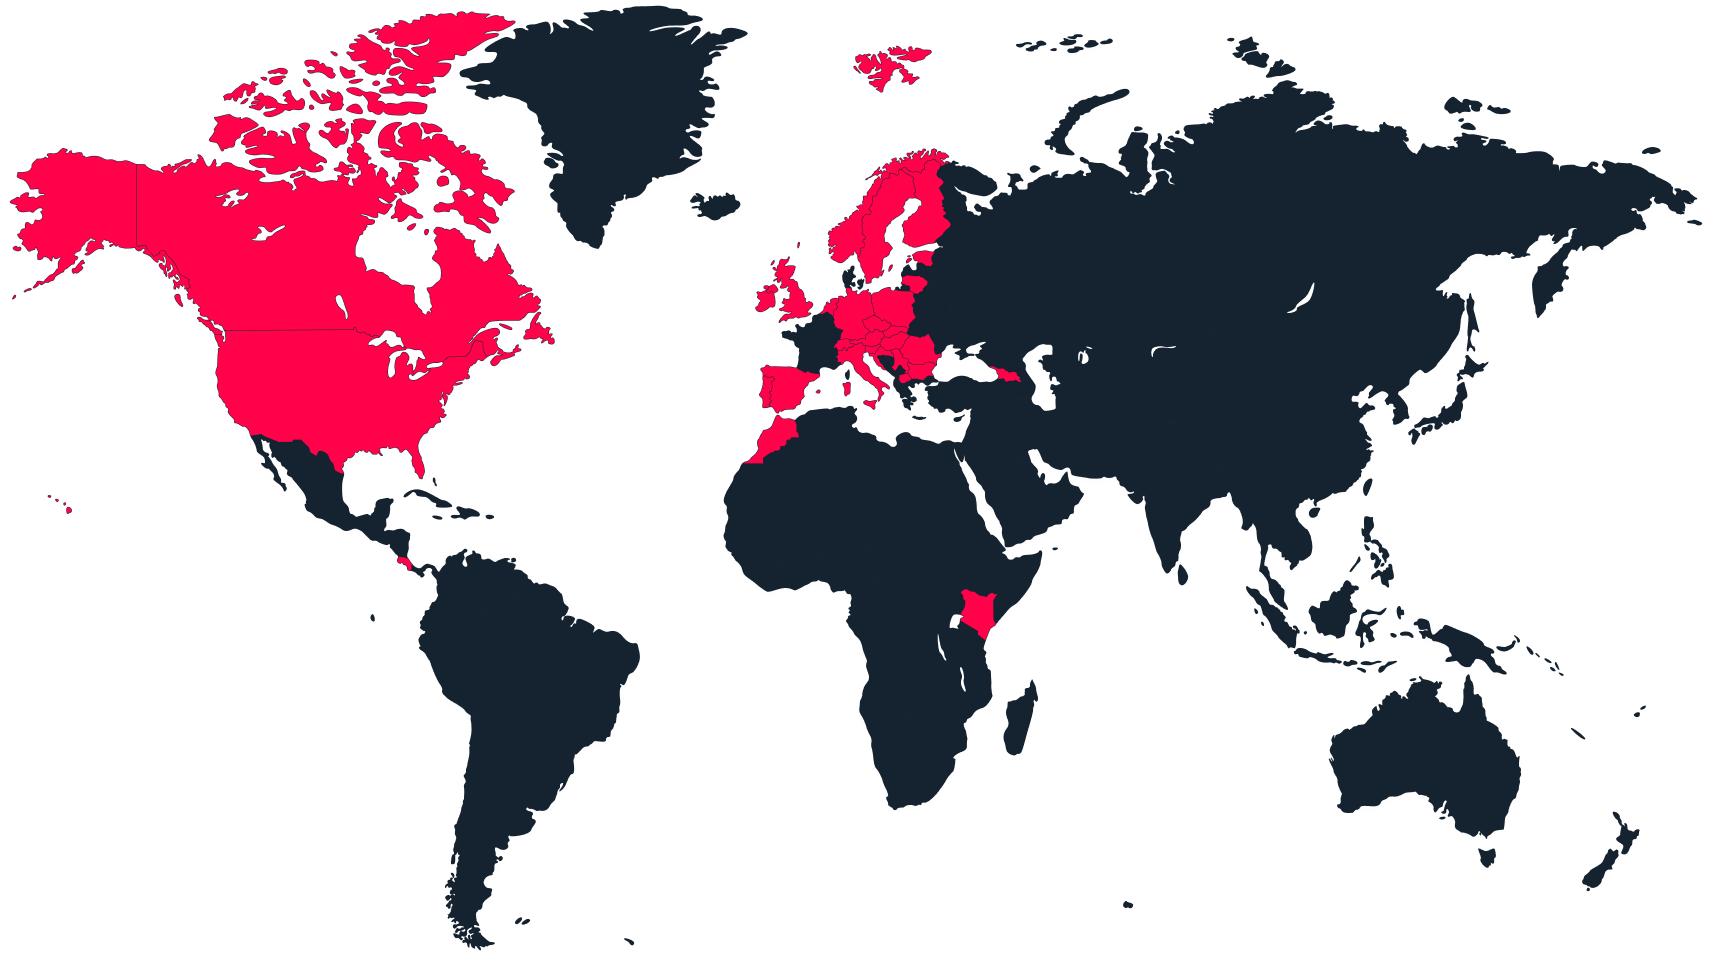 Kırmızı olarak işaretlenmiş aktif ülkelerin bulunduğu bir dünya haritası